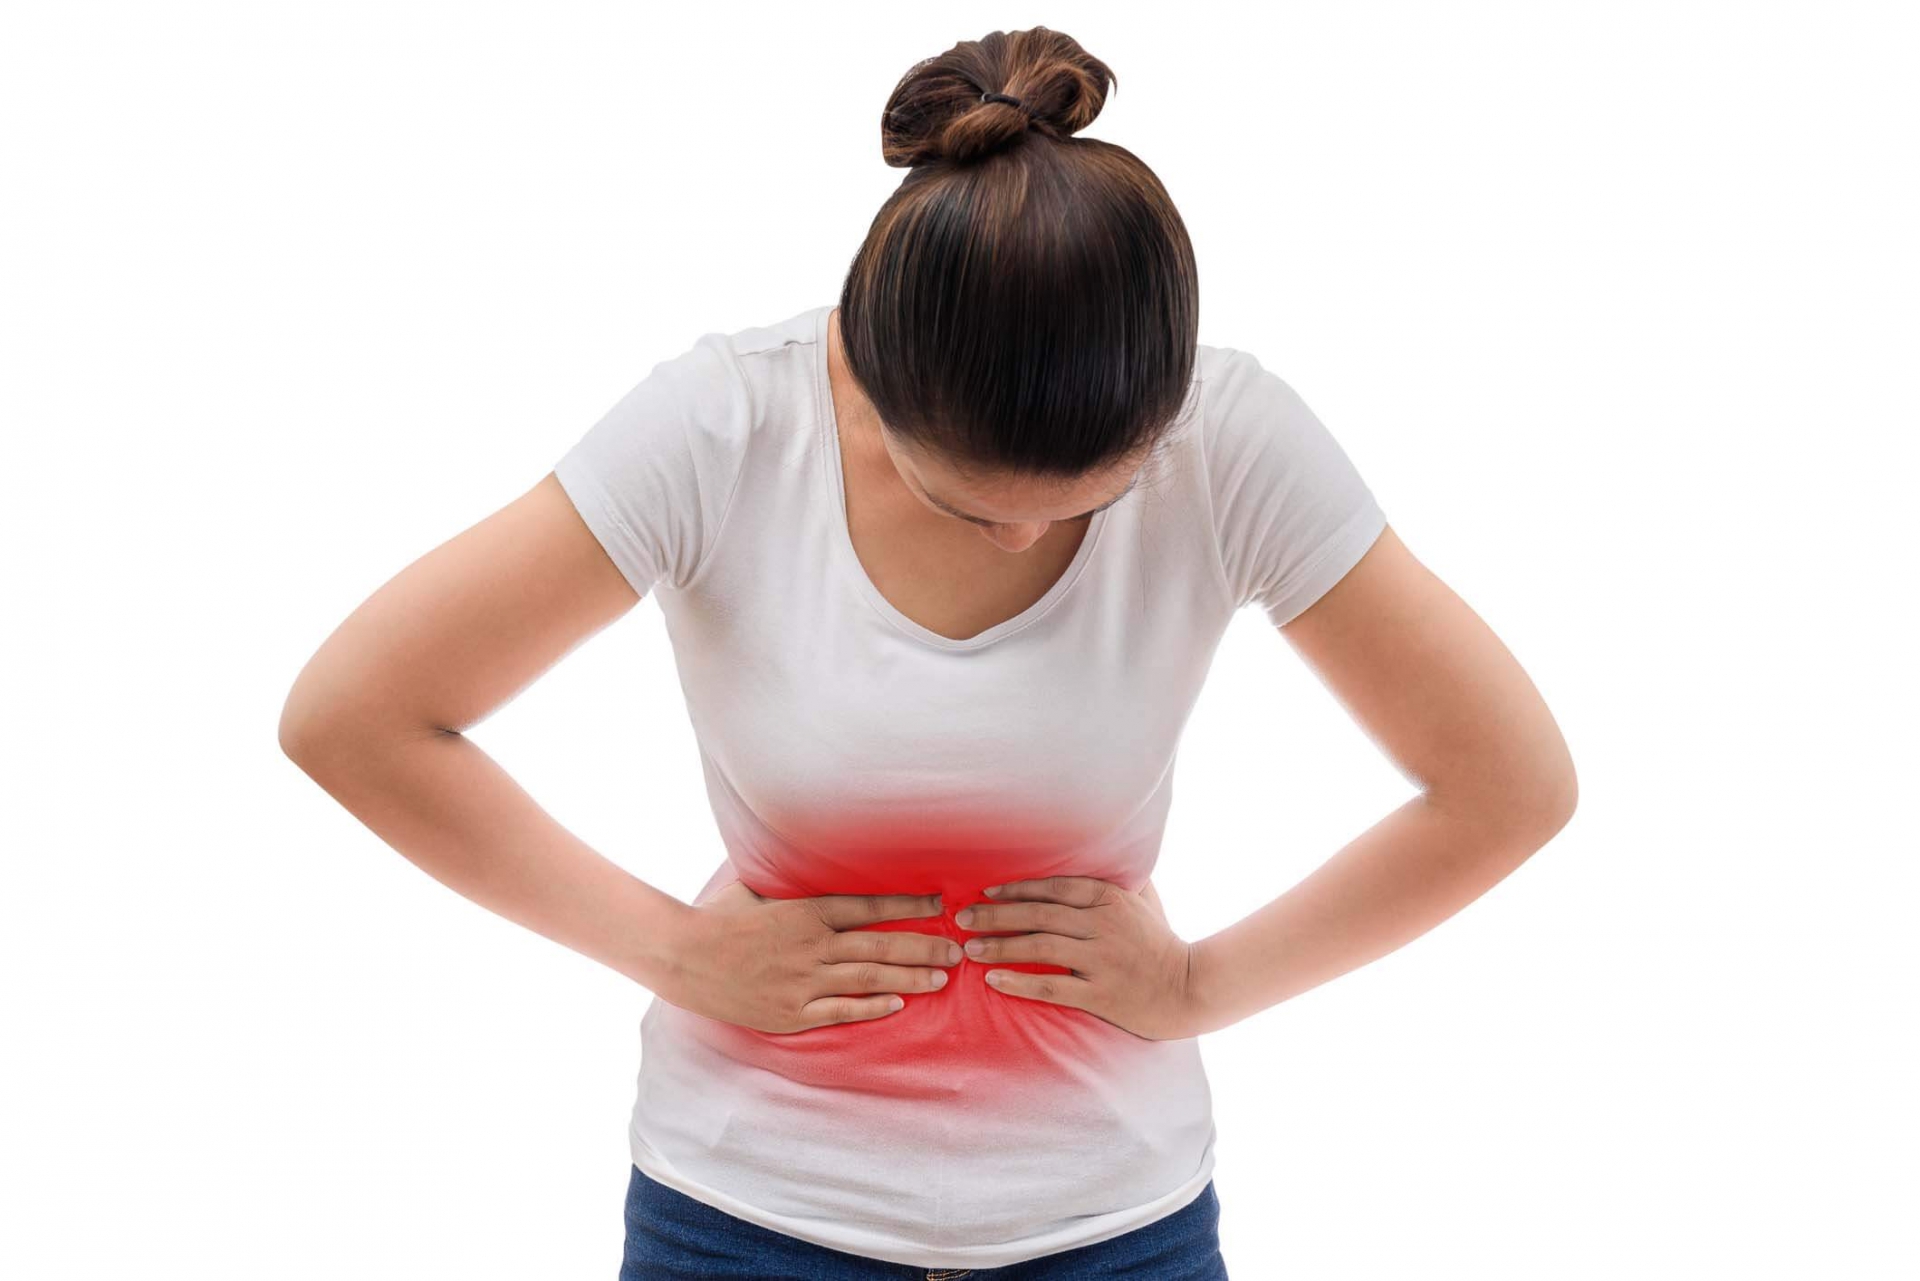 Khi nào cần tìm đến bác sĩ khi bị đau vùng bụng dưới?